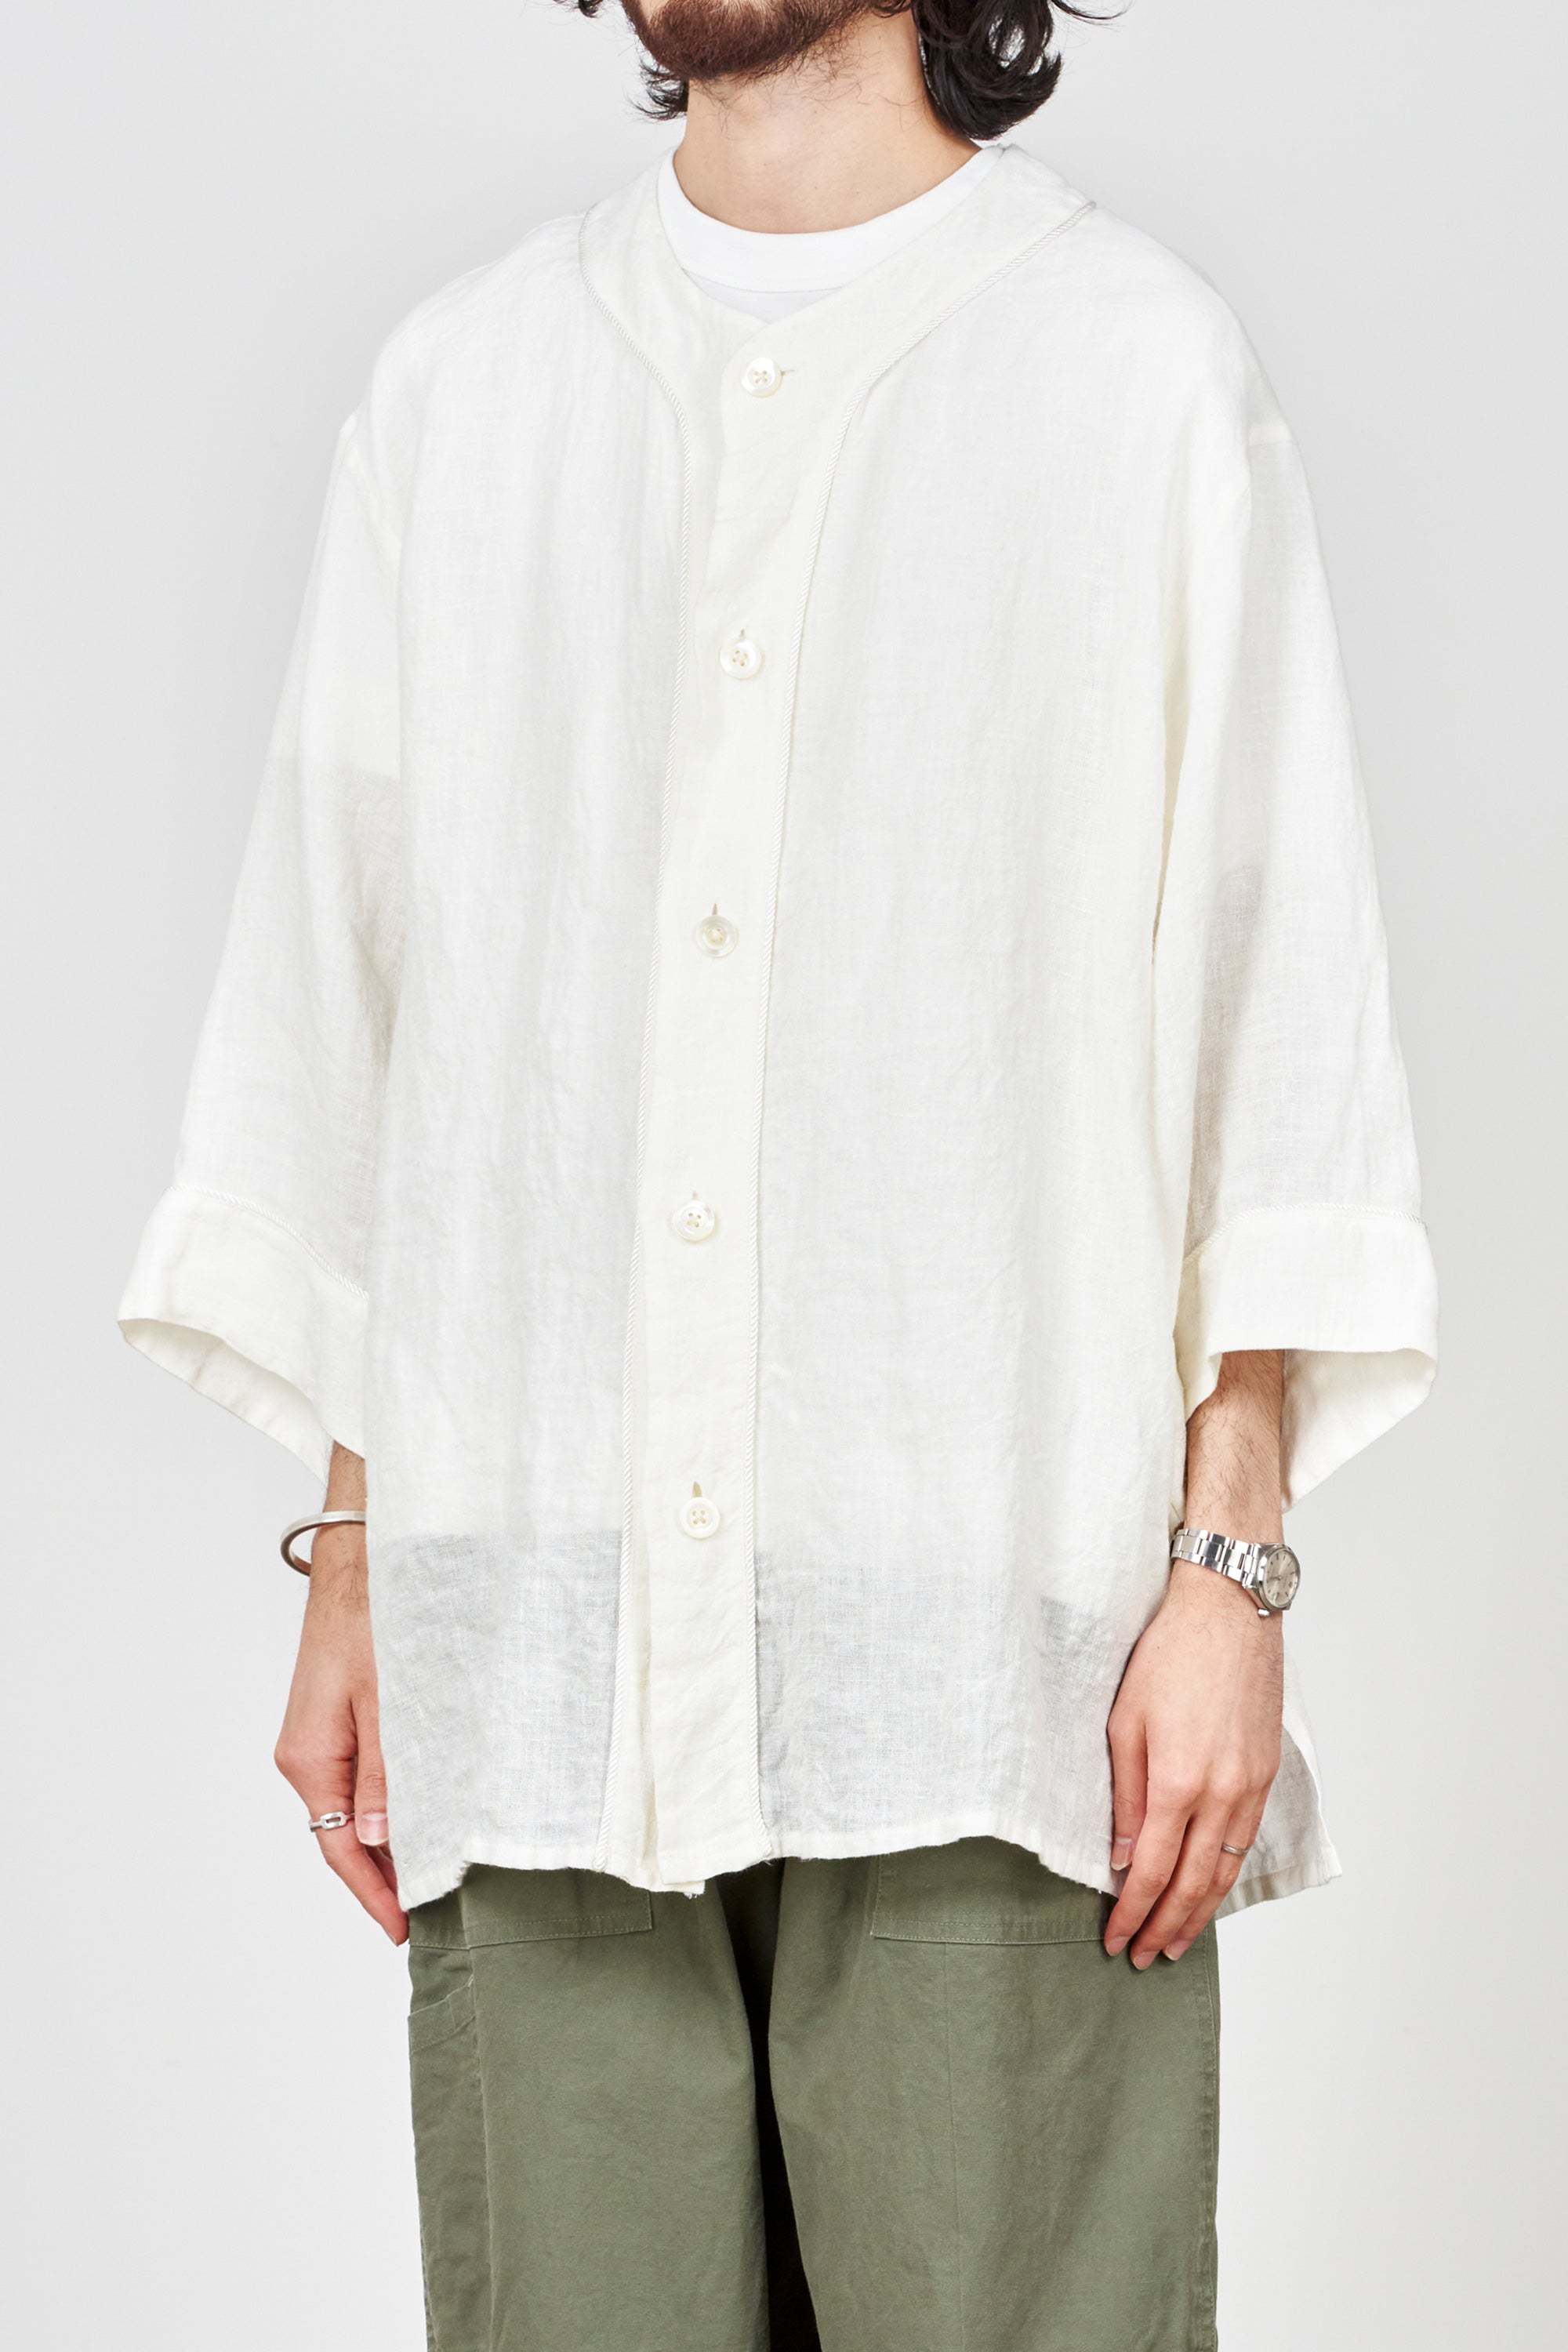 オーガニックリネン / ベースボールシャツ, White